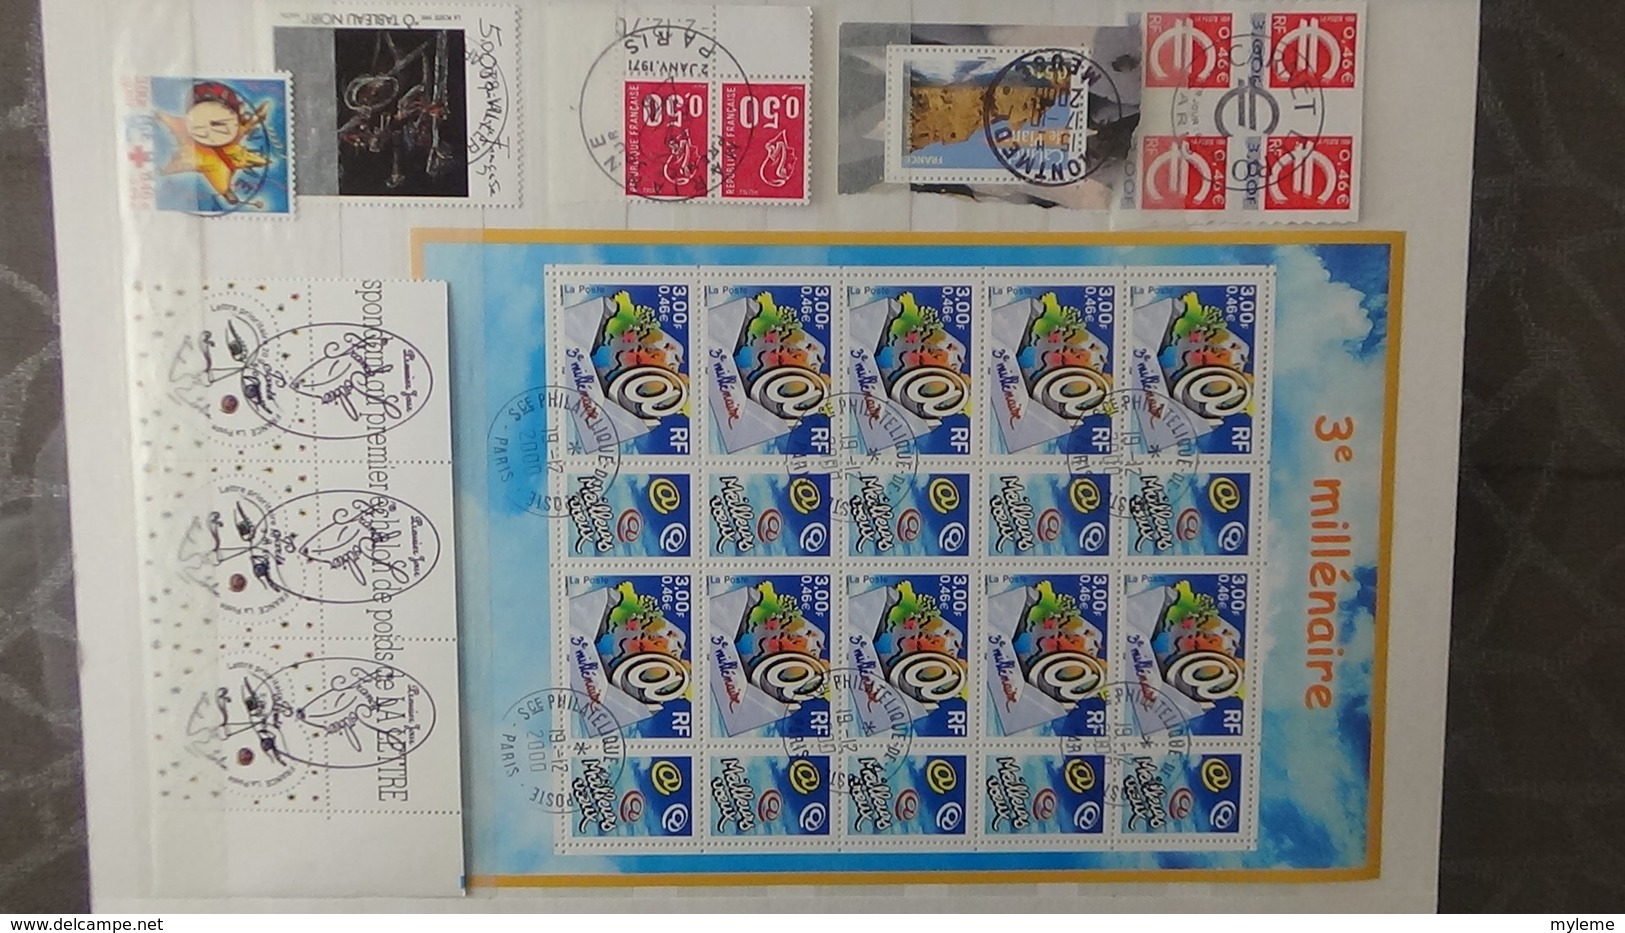 Collection de timbres, carnets, blocs de France avec oblitérations soignées (2 feuilles concorde avec 1 pli)